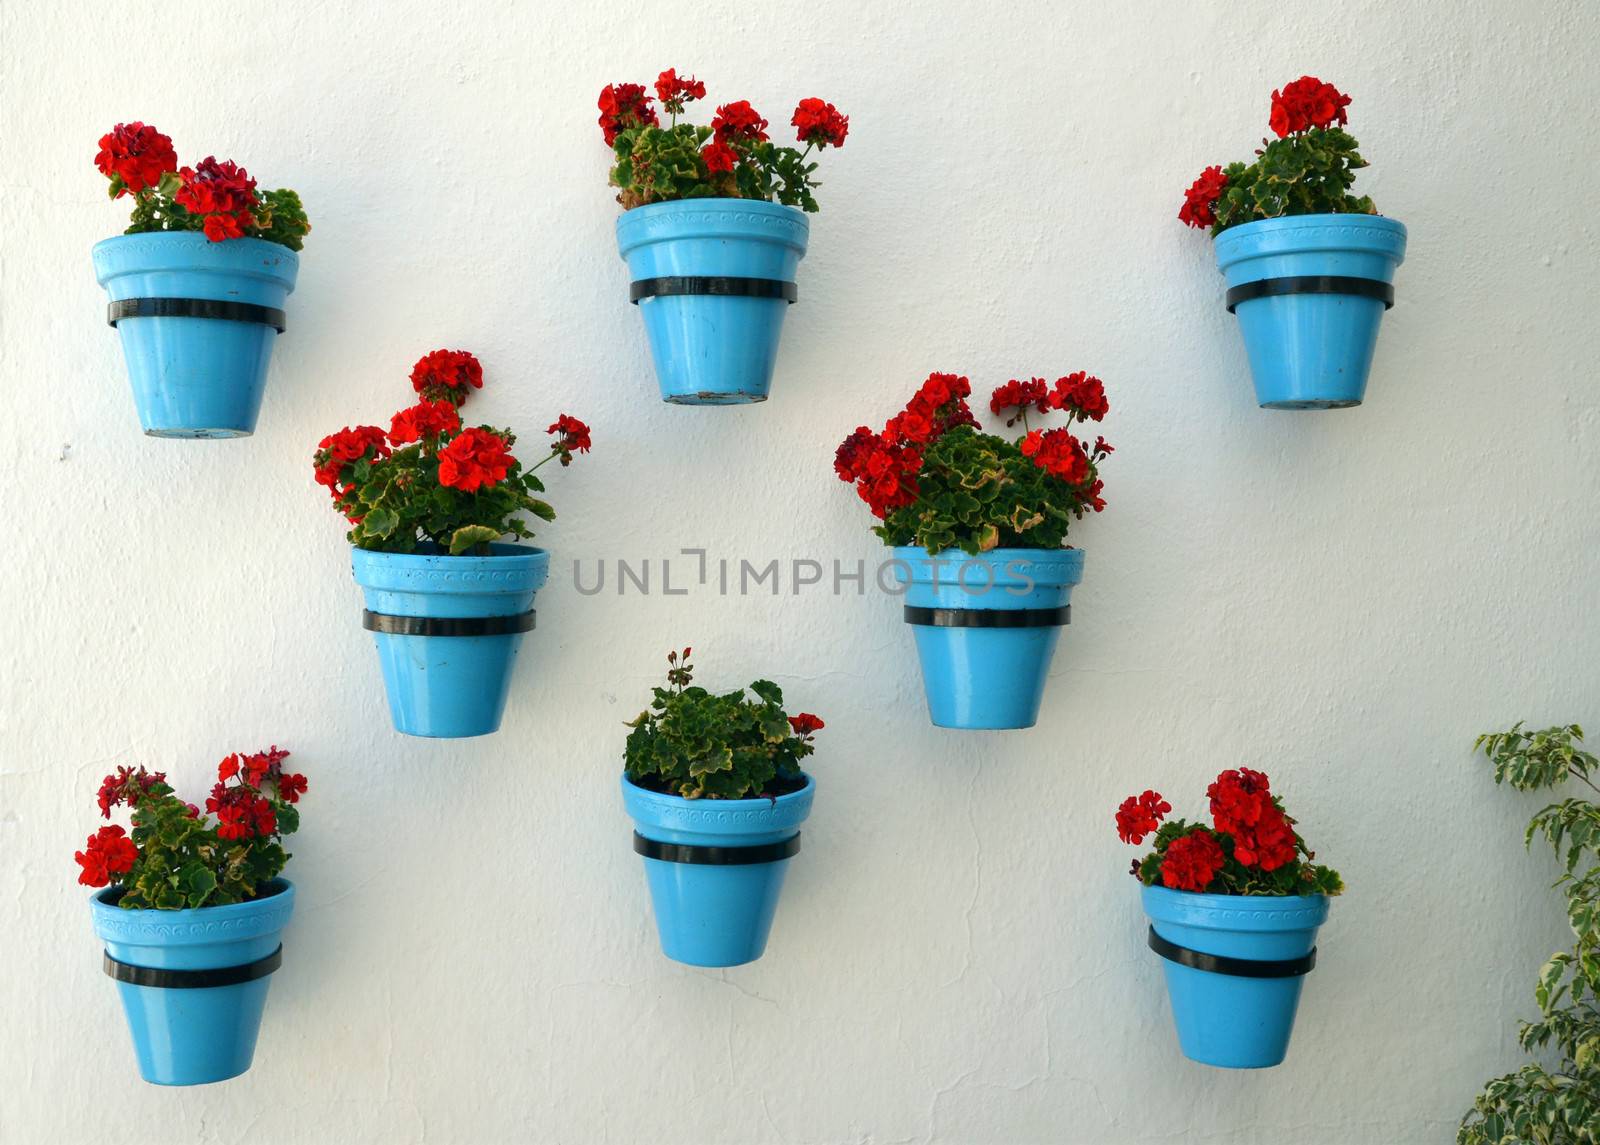 Flowers in flowerpot on wall by finta2609